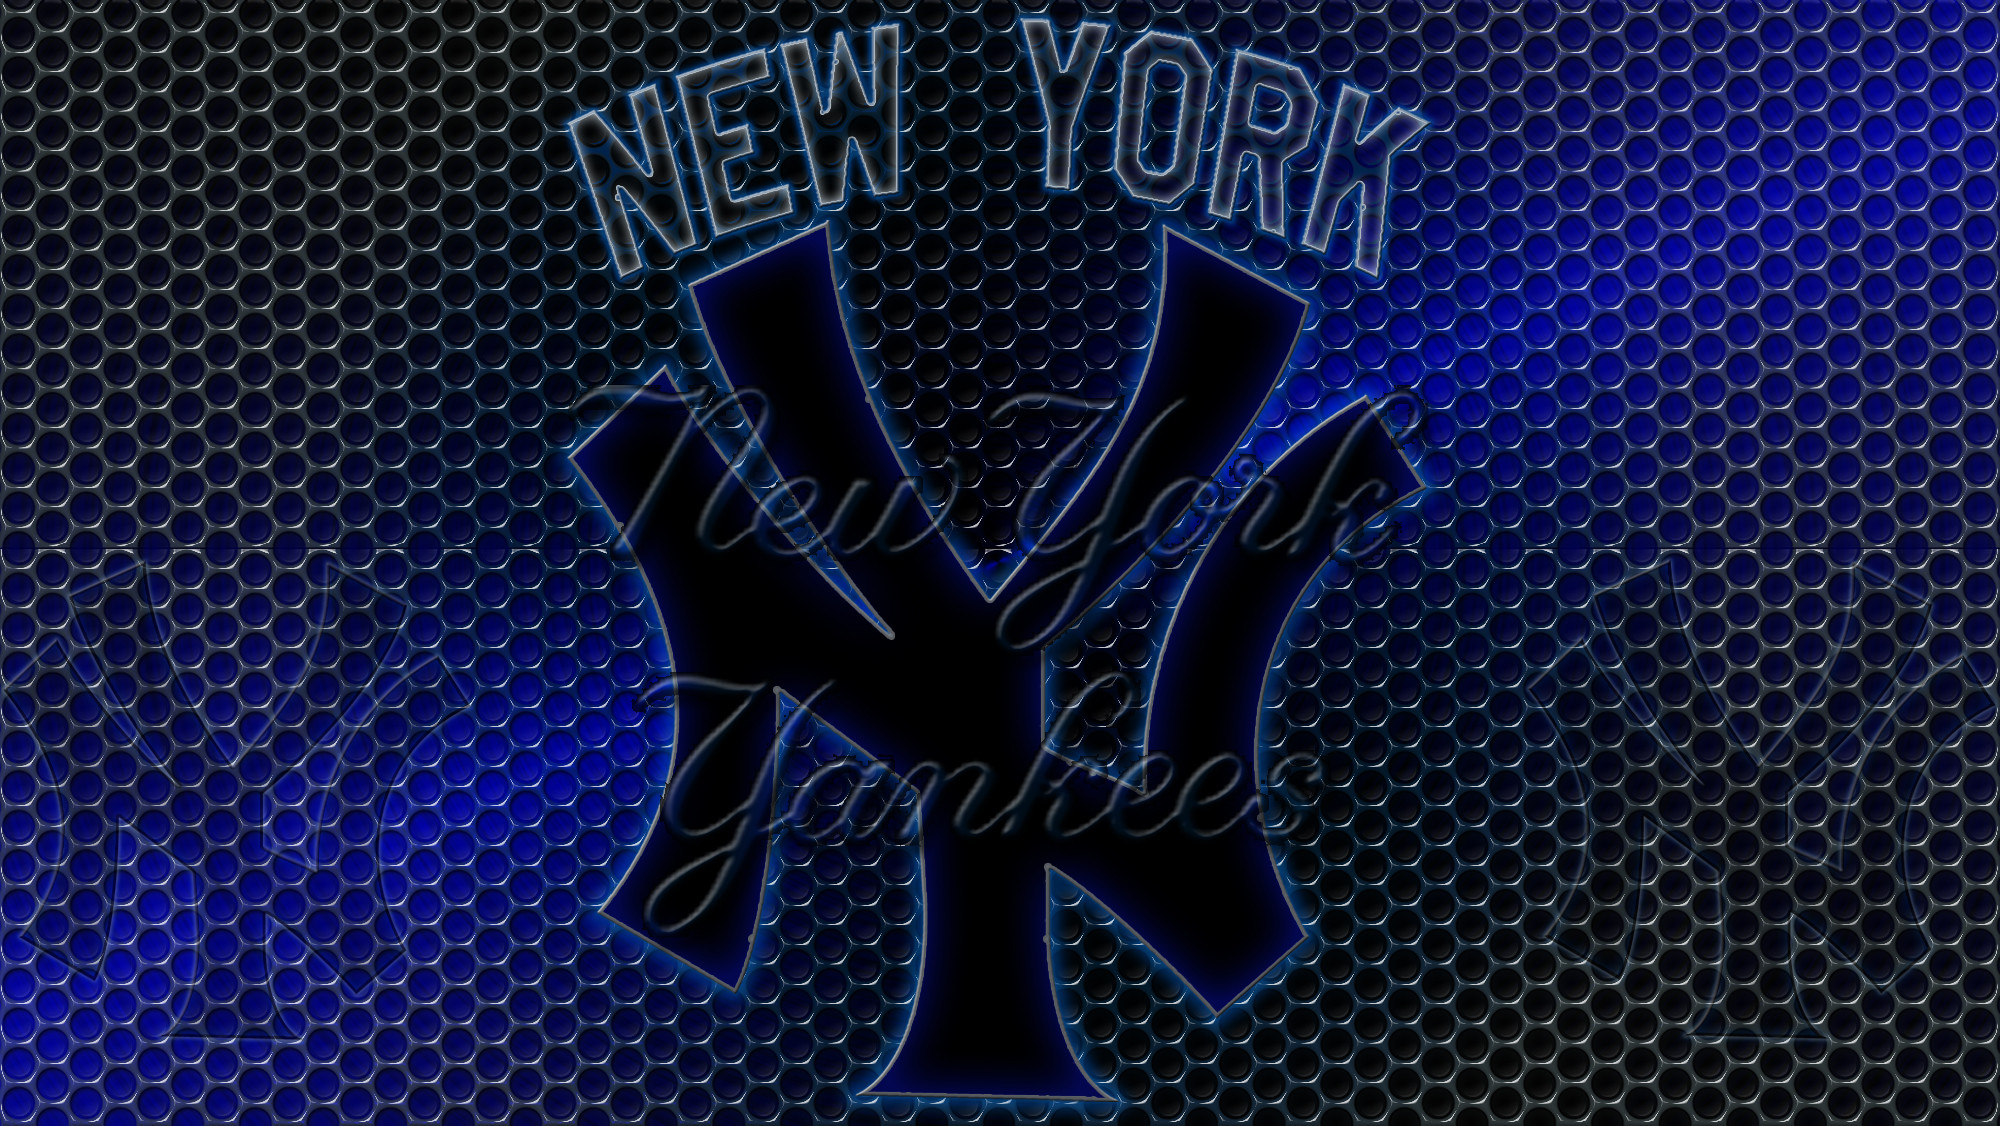 2000x1126 ... 42 Ny Yankees Logo Wallpaper ...